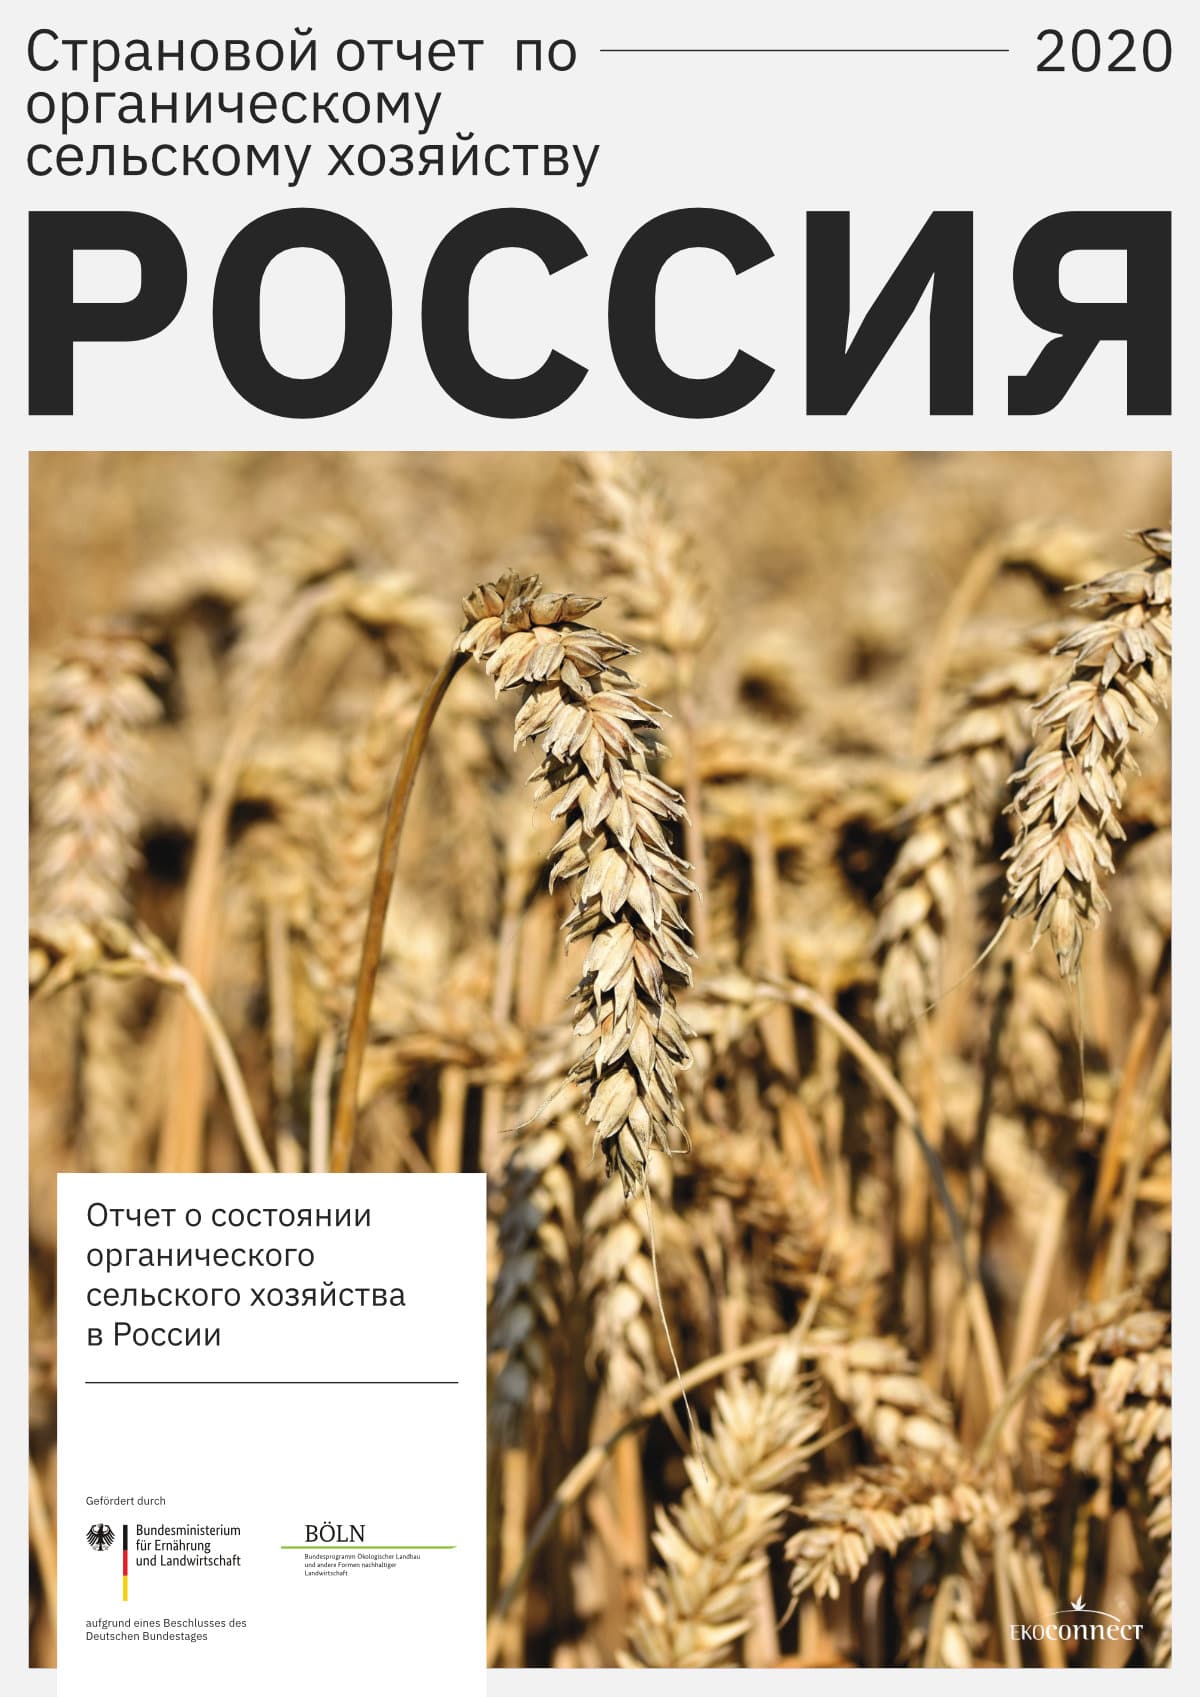 whateverworks-Страновой-отчет-по-органическому-сельскому-хозяйству-Россия-EkoConnect-2020